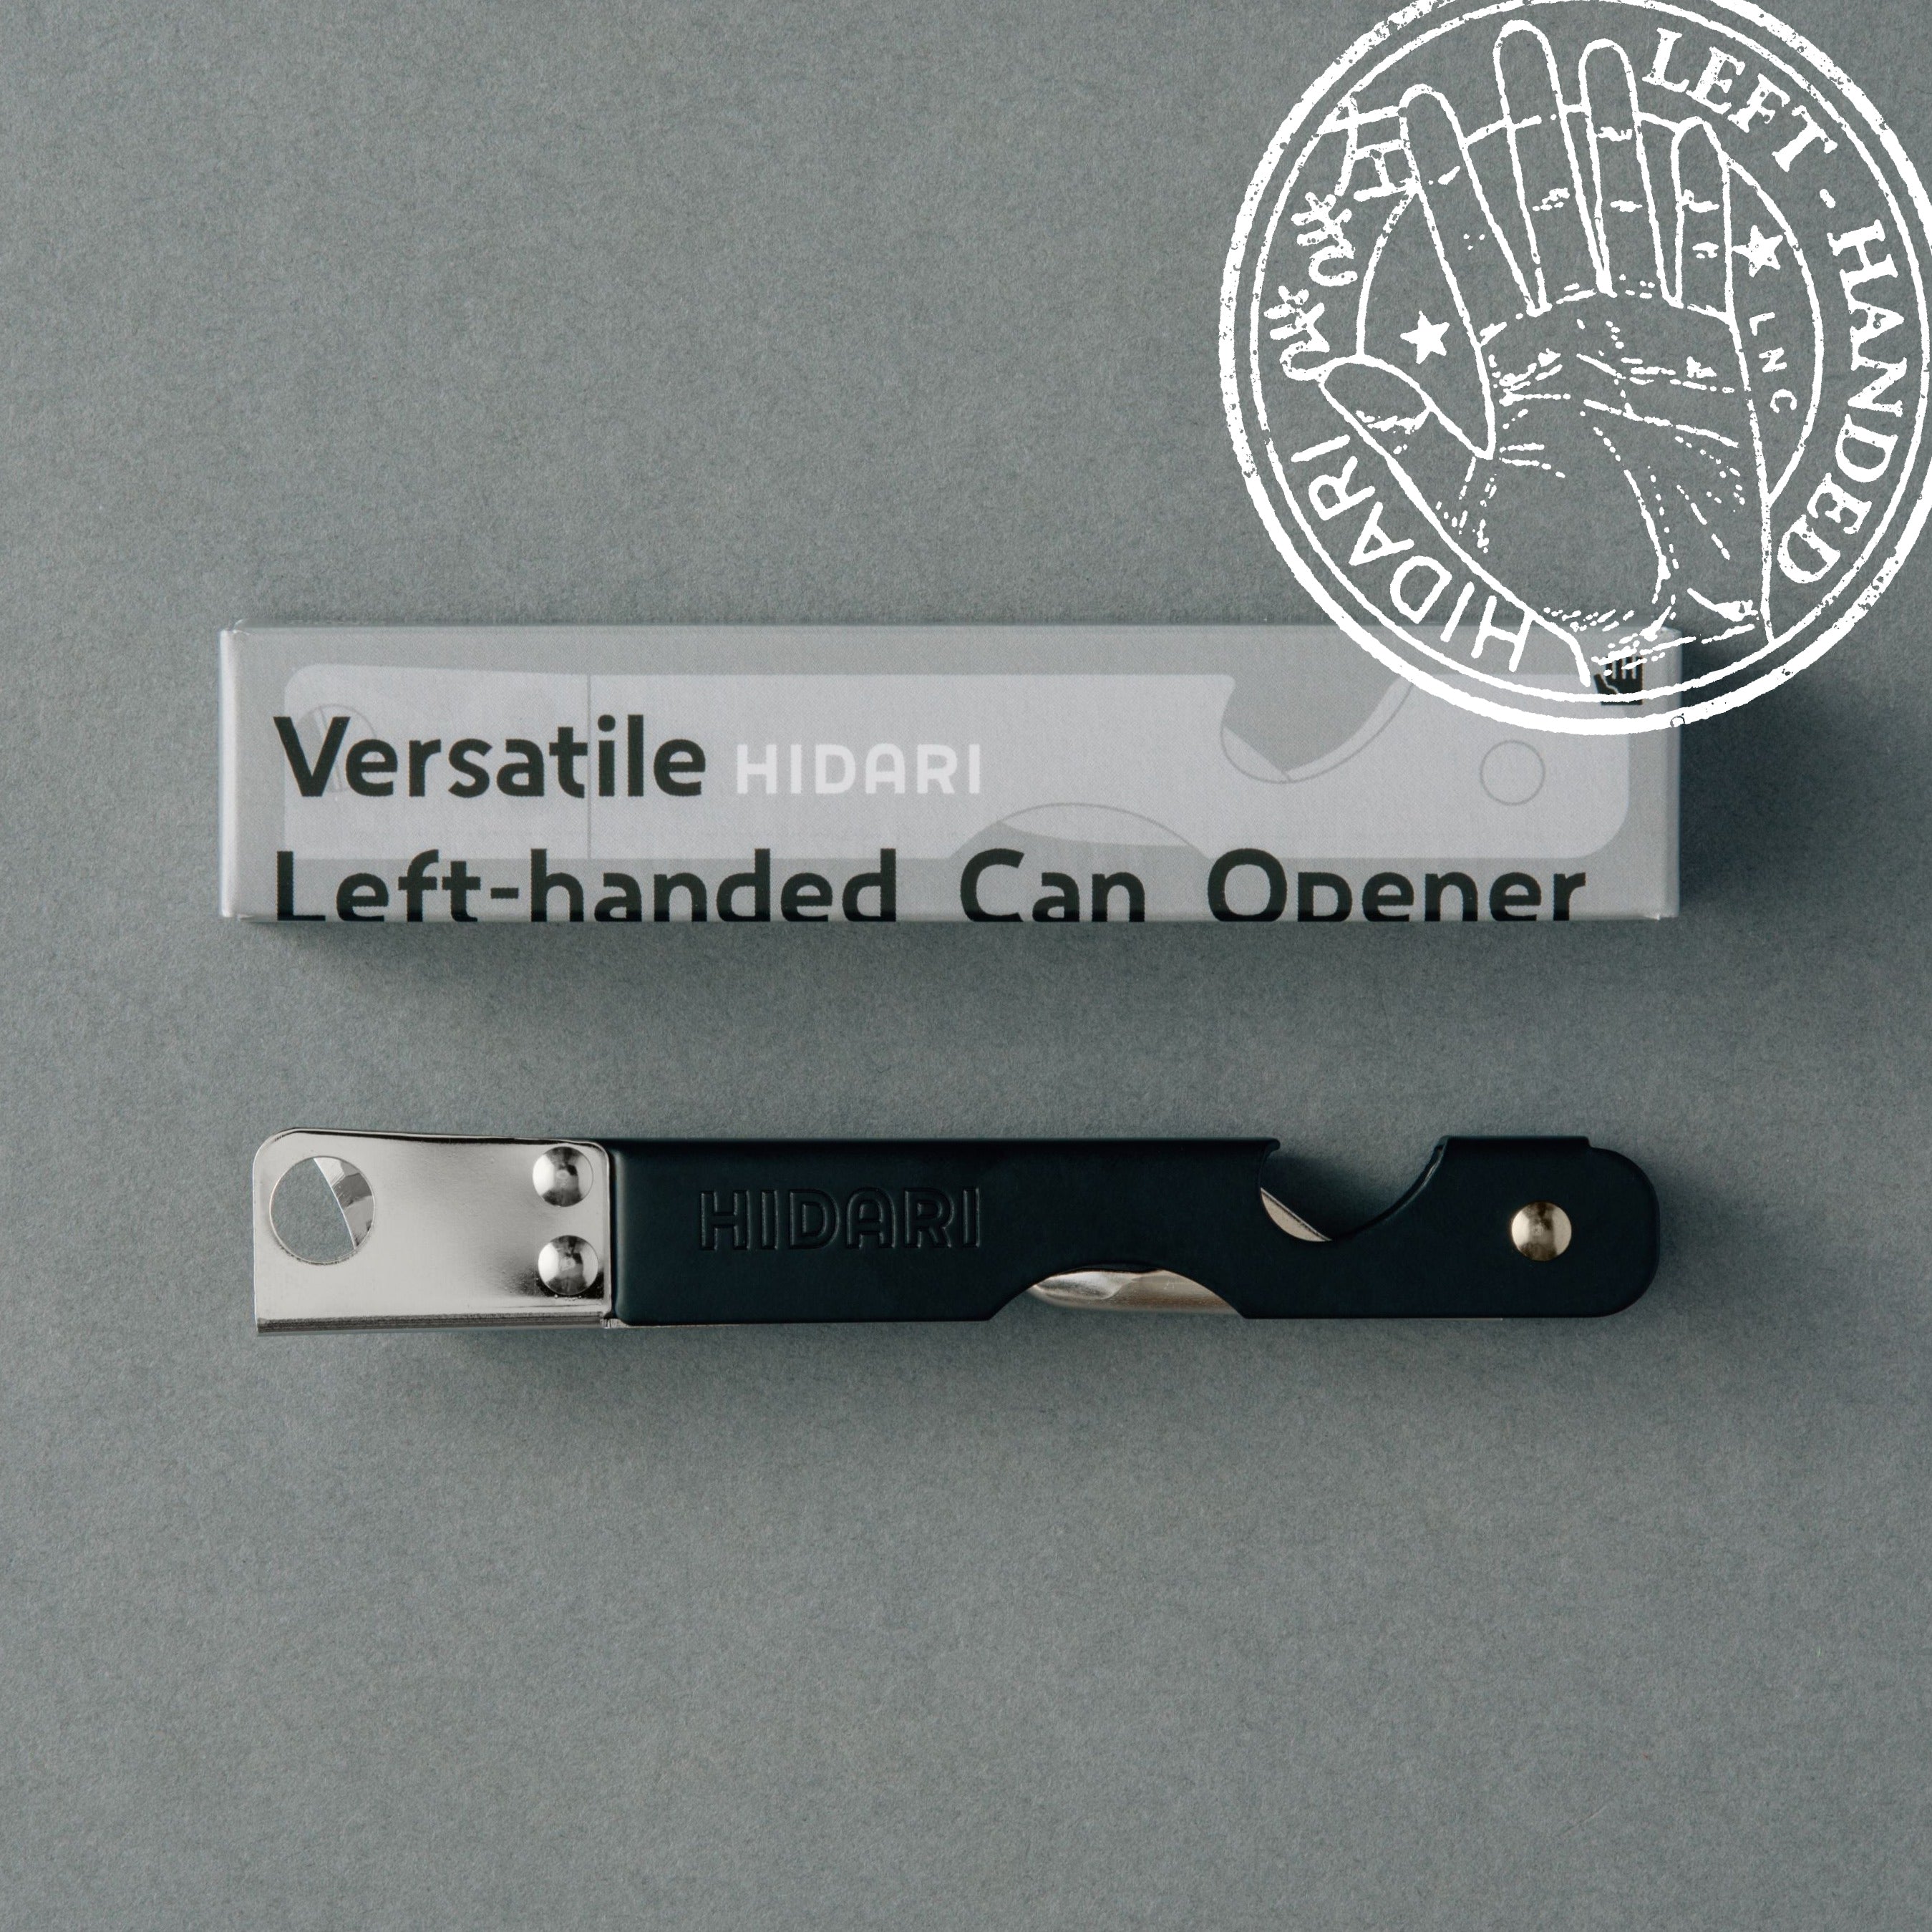 Left handed can opener Versatile HIDARI made in JP